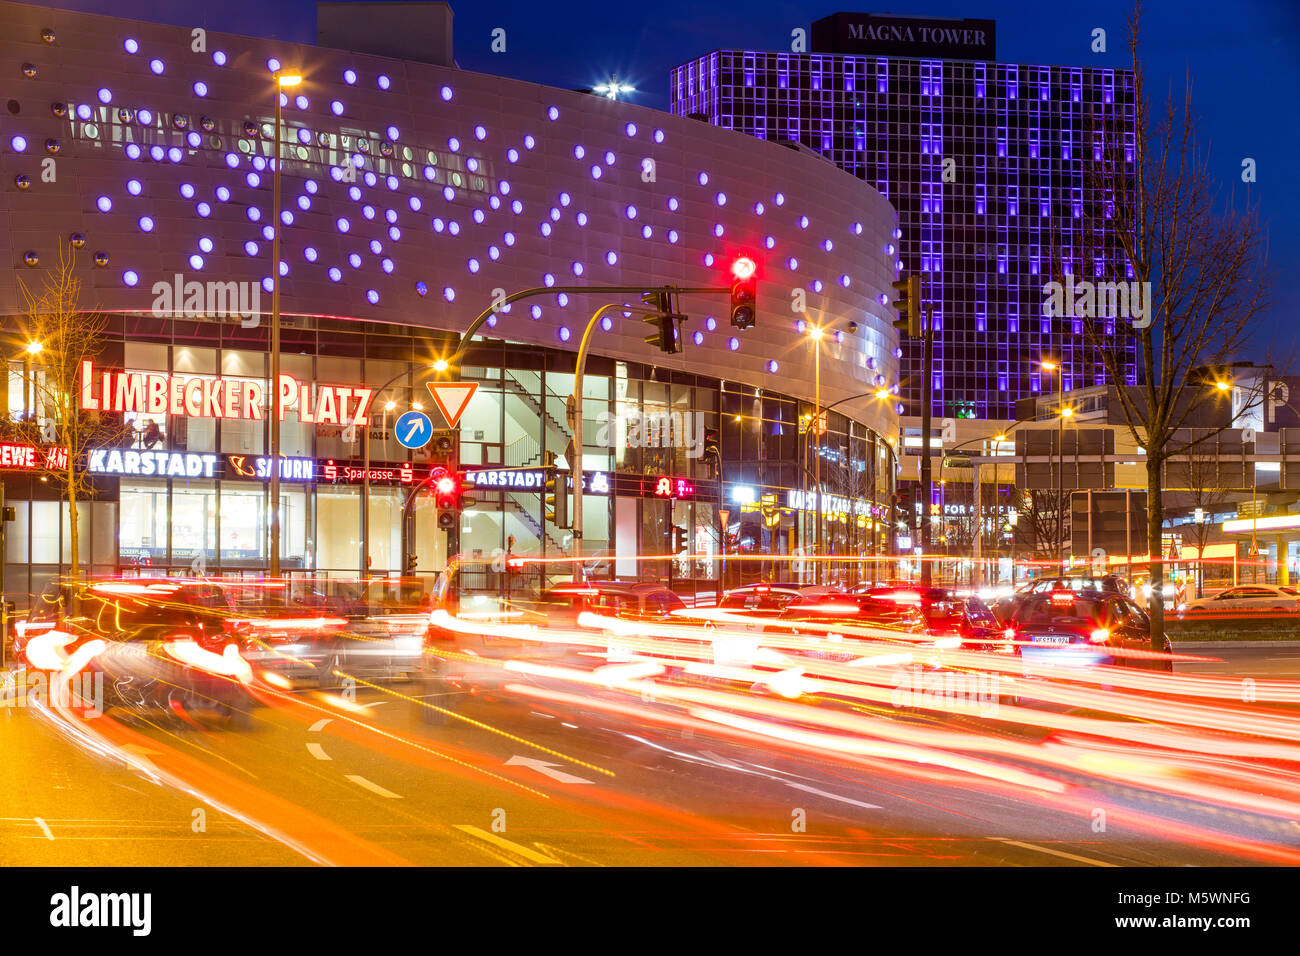 Berliner Platz, plaza, en el centro de la ciudad de Essen, Alemania, centro comercial Limbecker Platz, la Torre Magna Office Building, el tráfico nocturno, Foto de stock